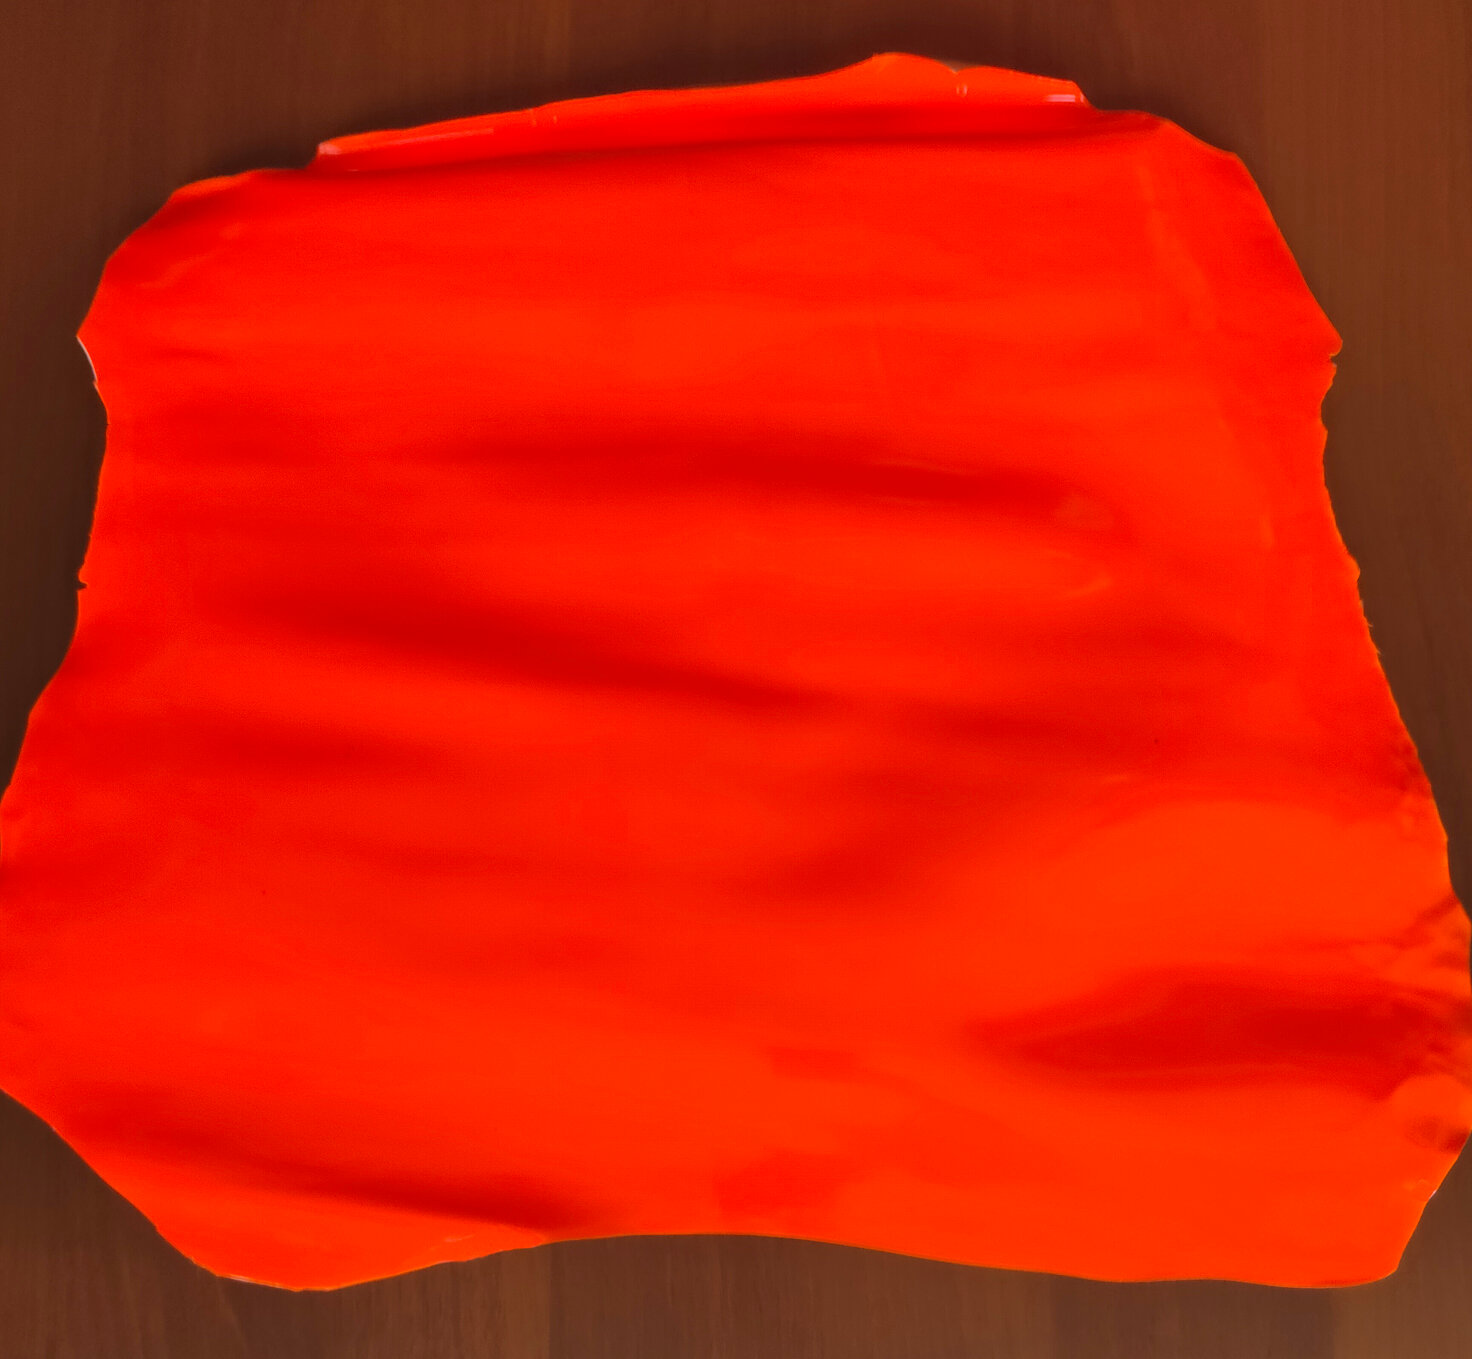 Натуральная итальянская кожа - шевро, коза, ламинированная светоотражающей пленкой. 30-35 дм2, цвет оранжевый